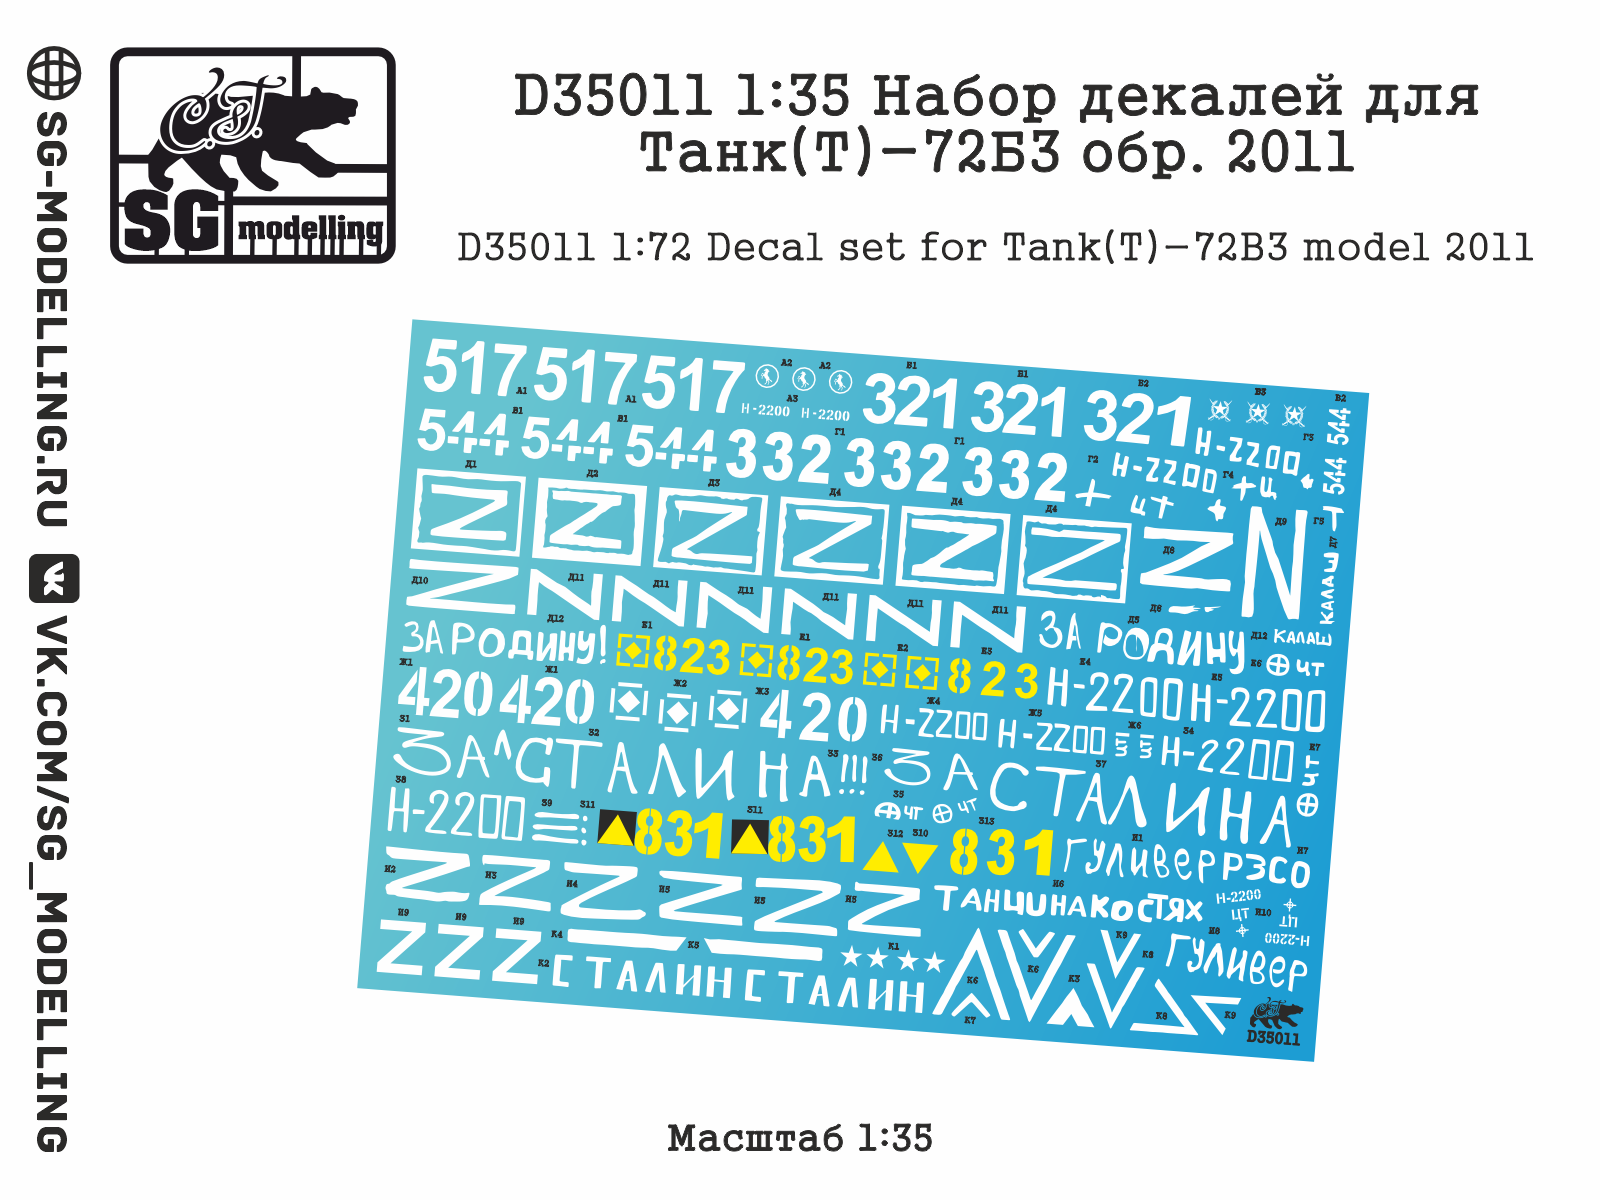 D35011  декали  Набор декалей для Танк-72Б3 обр. 2011  (1:35)